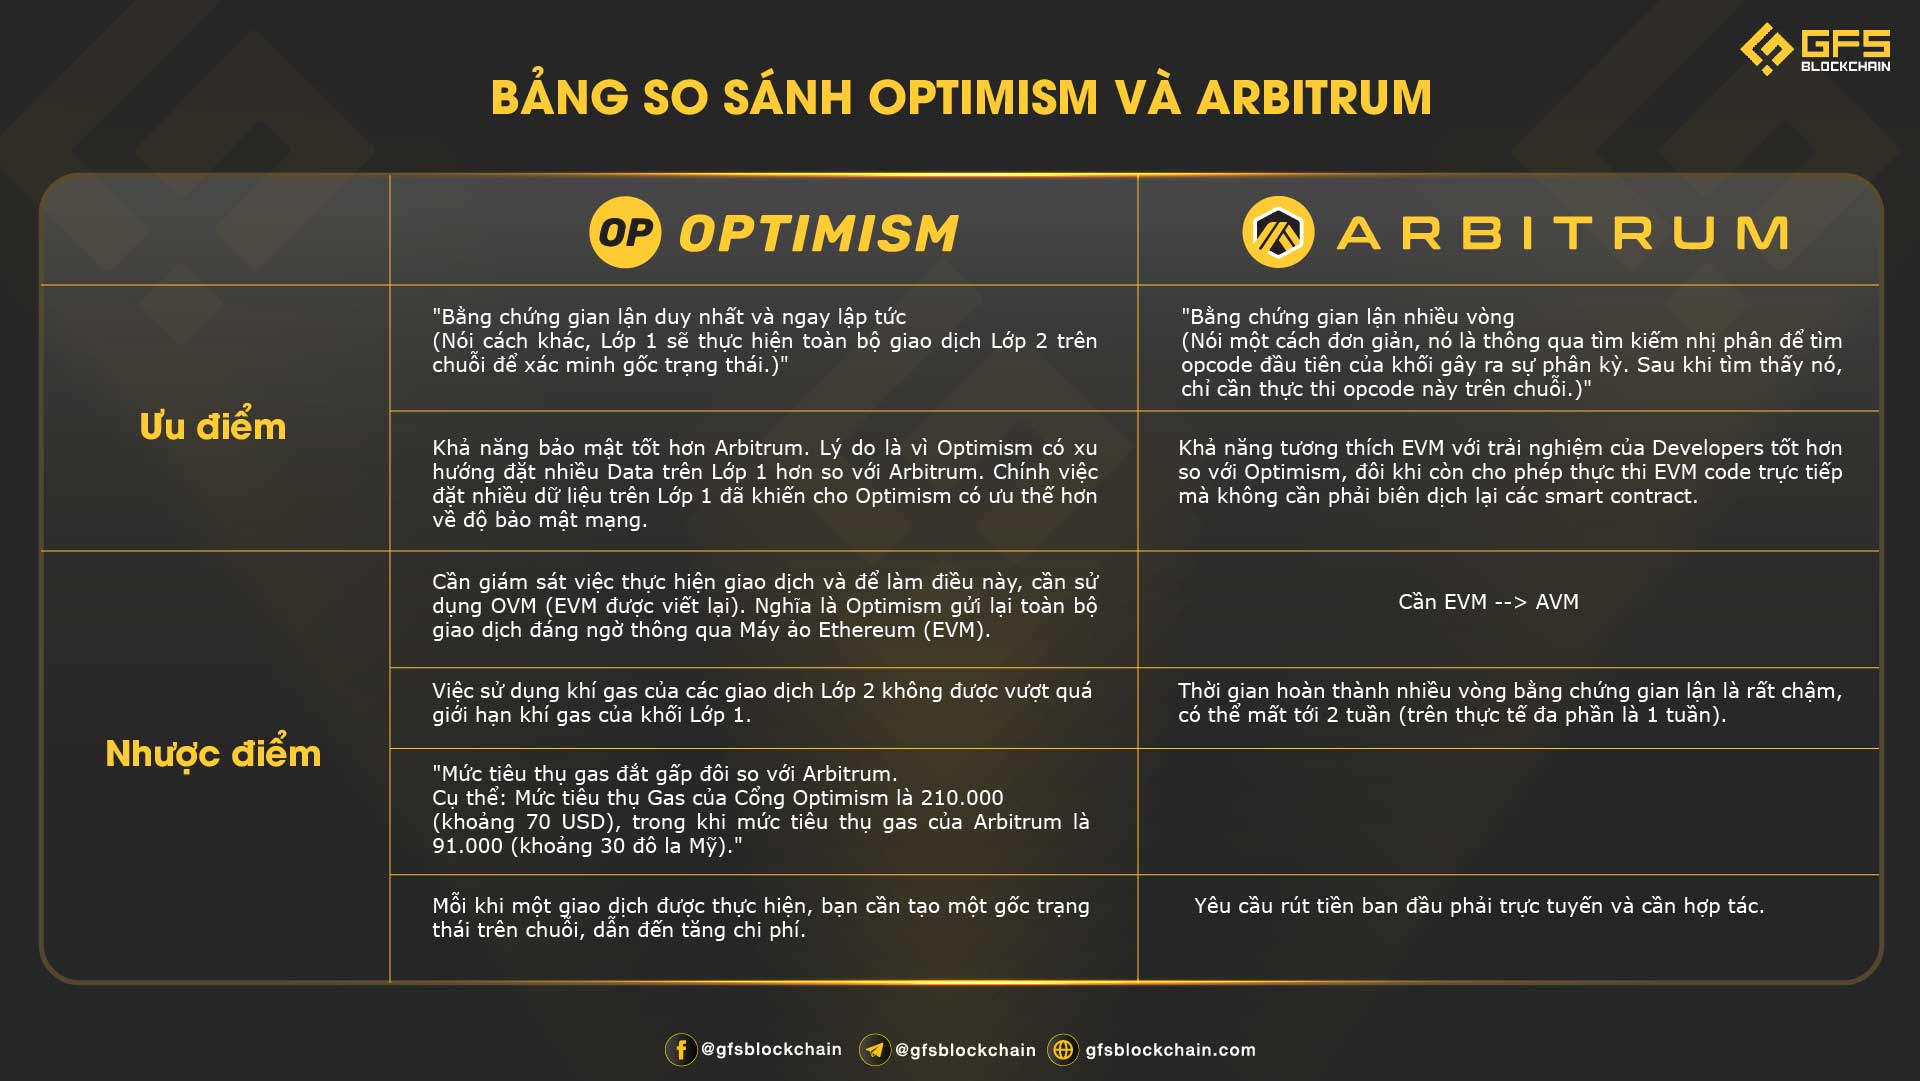 Điểm khác biệt giữa Optimism và Arbitrum